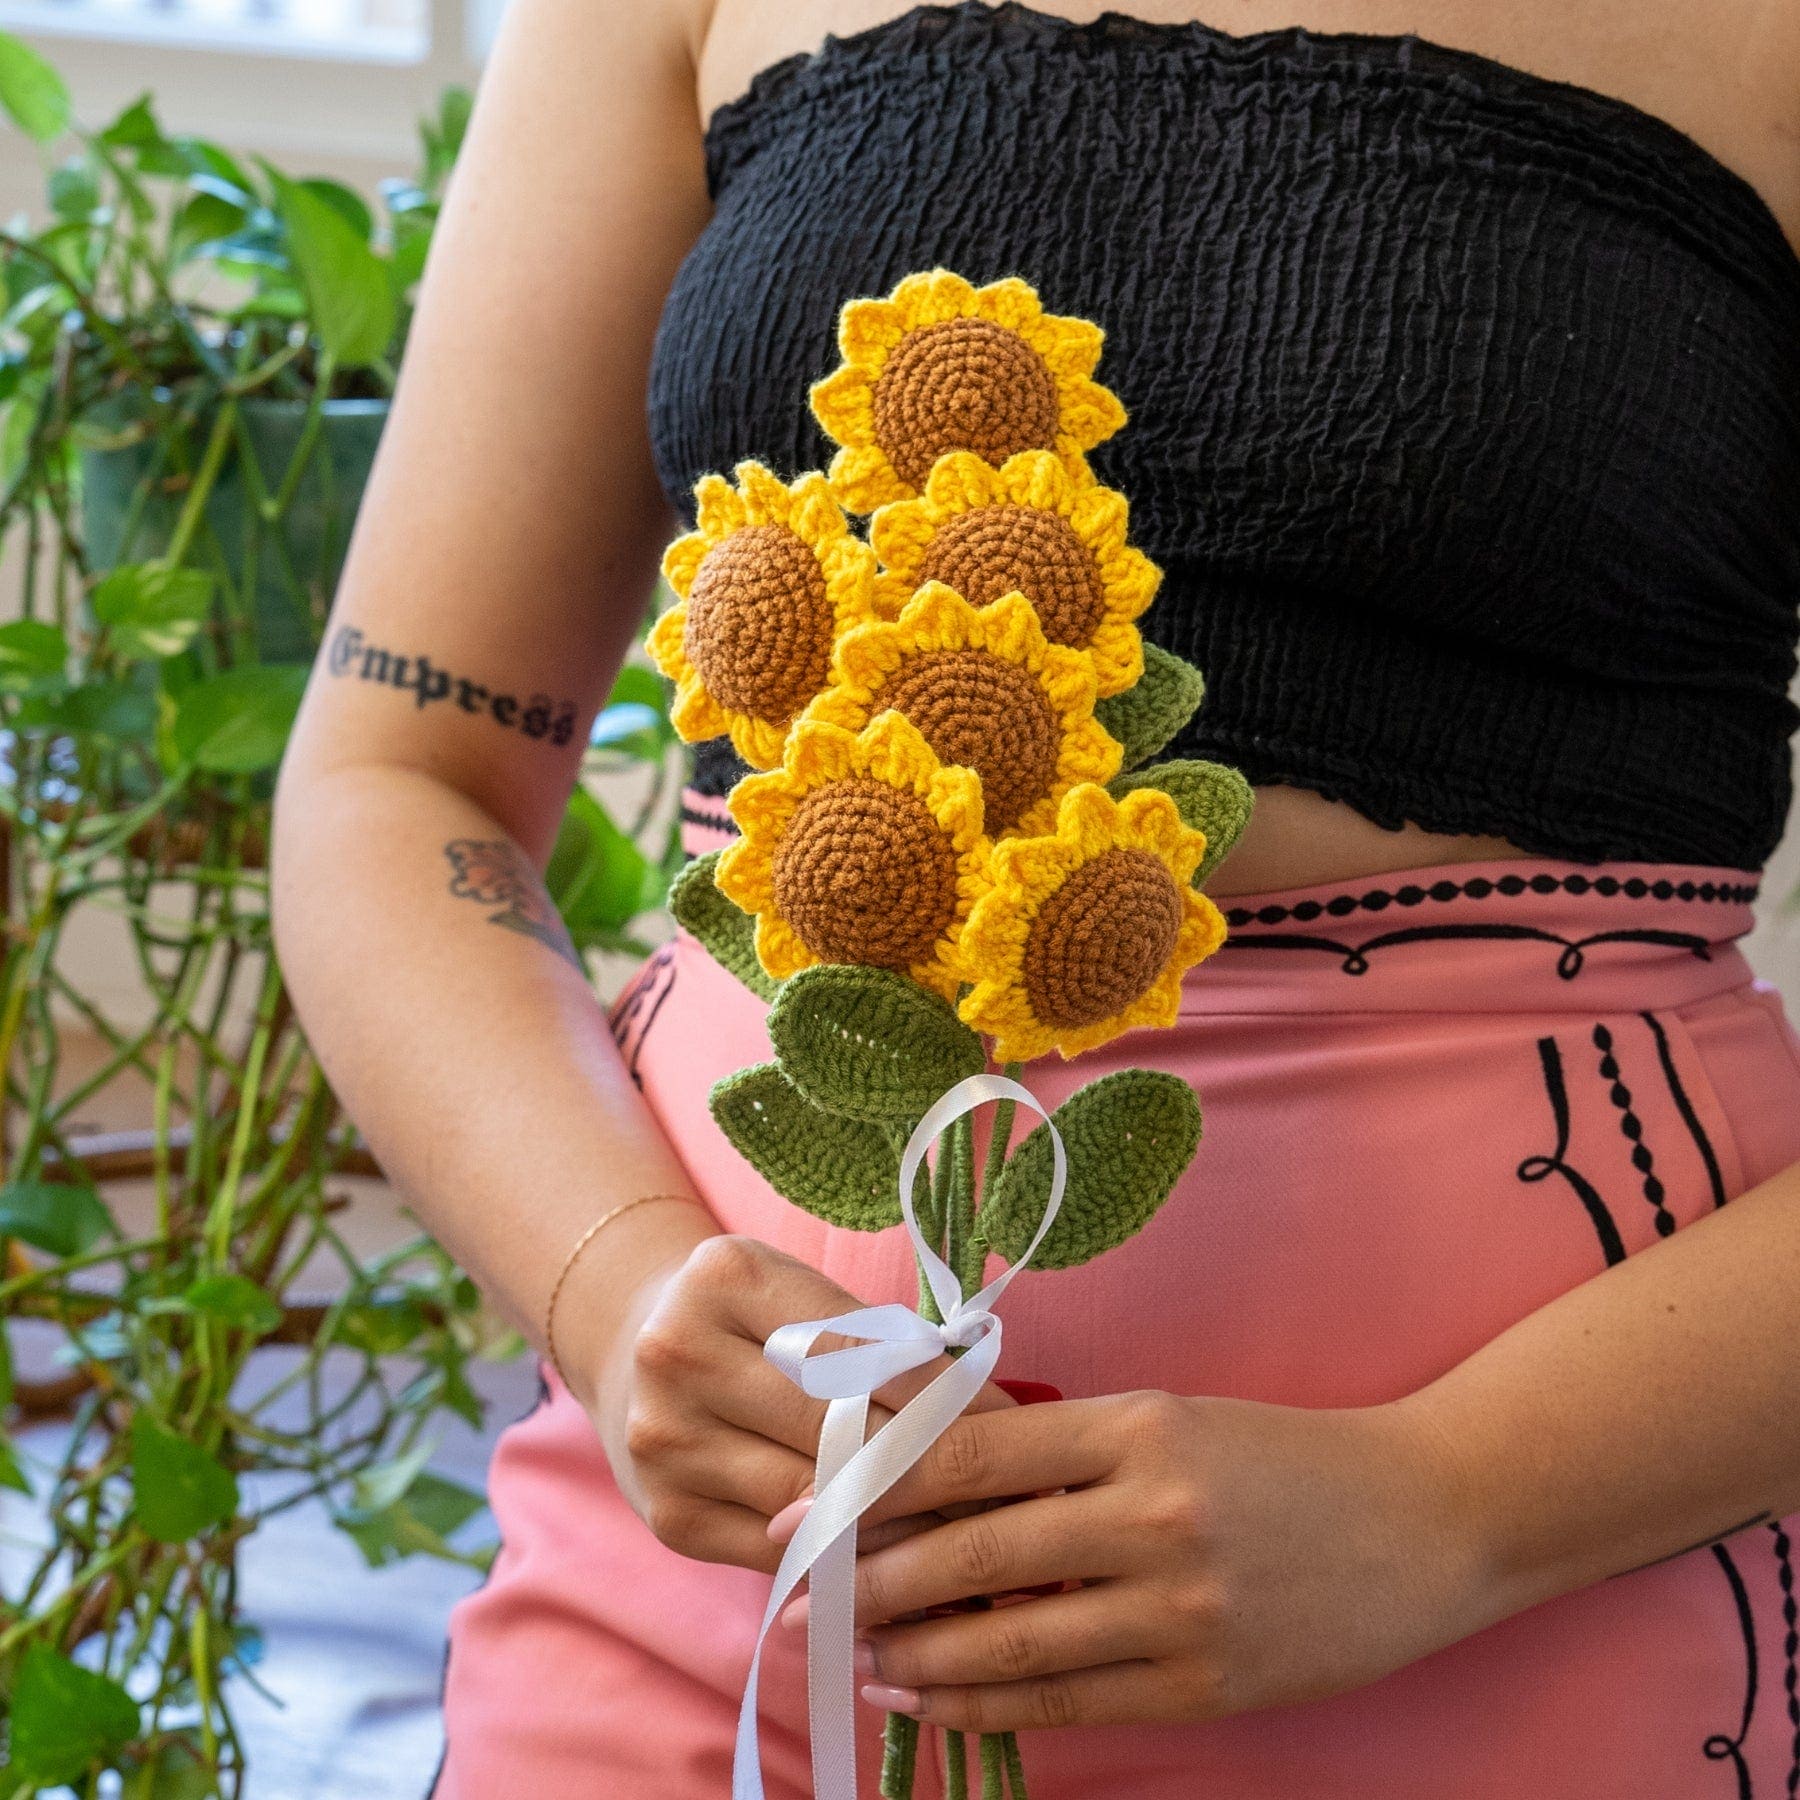 Craft Club Co Sunflower Bouquet DIY | Crochet Flower Kit